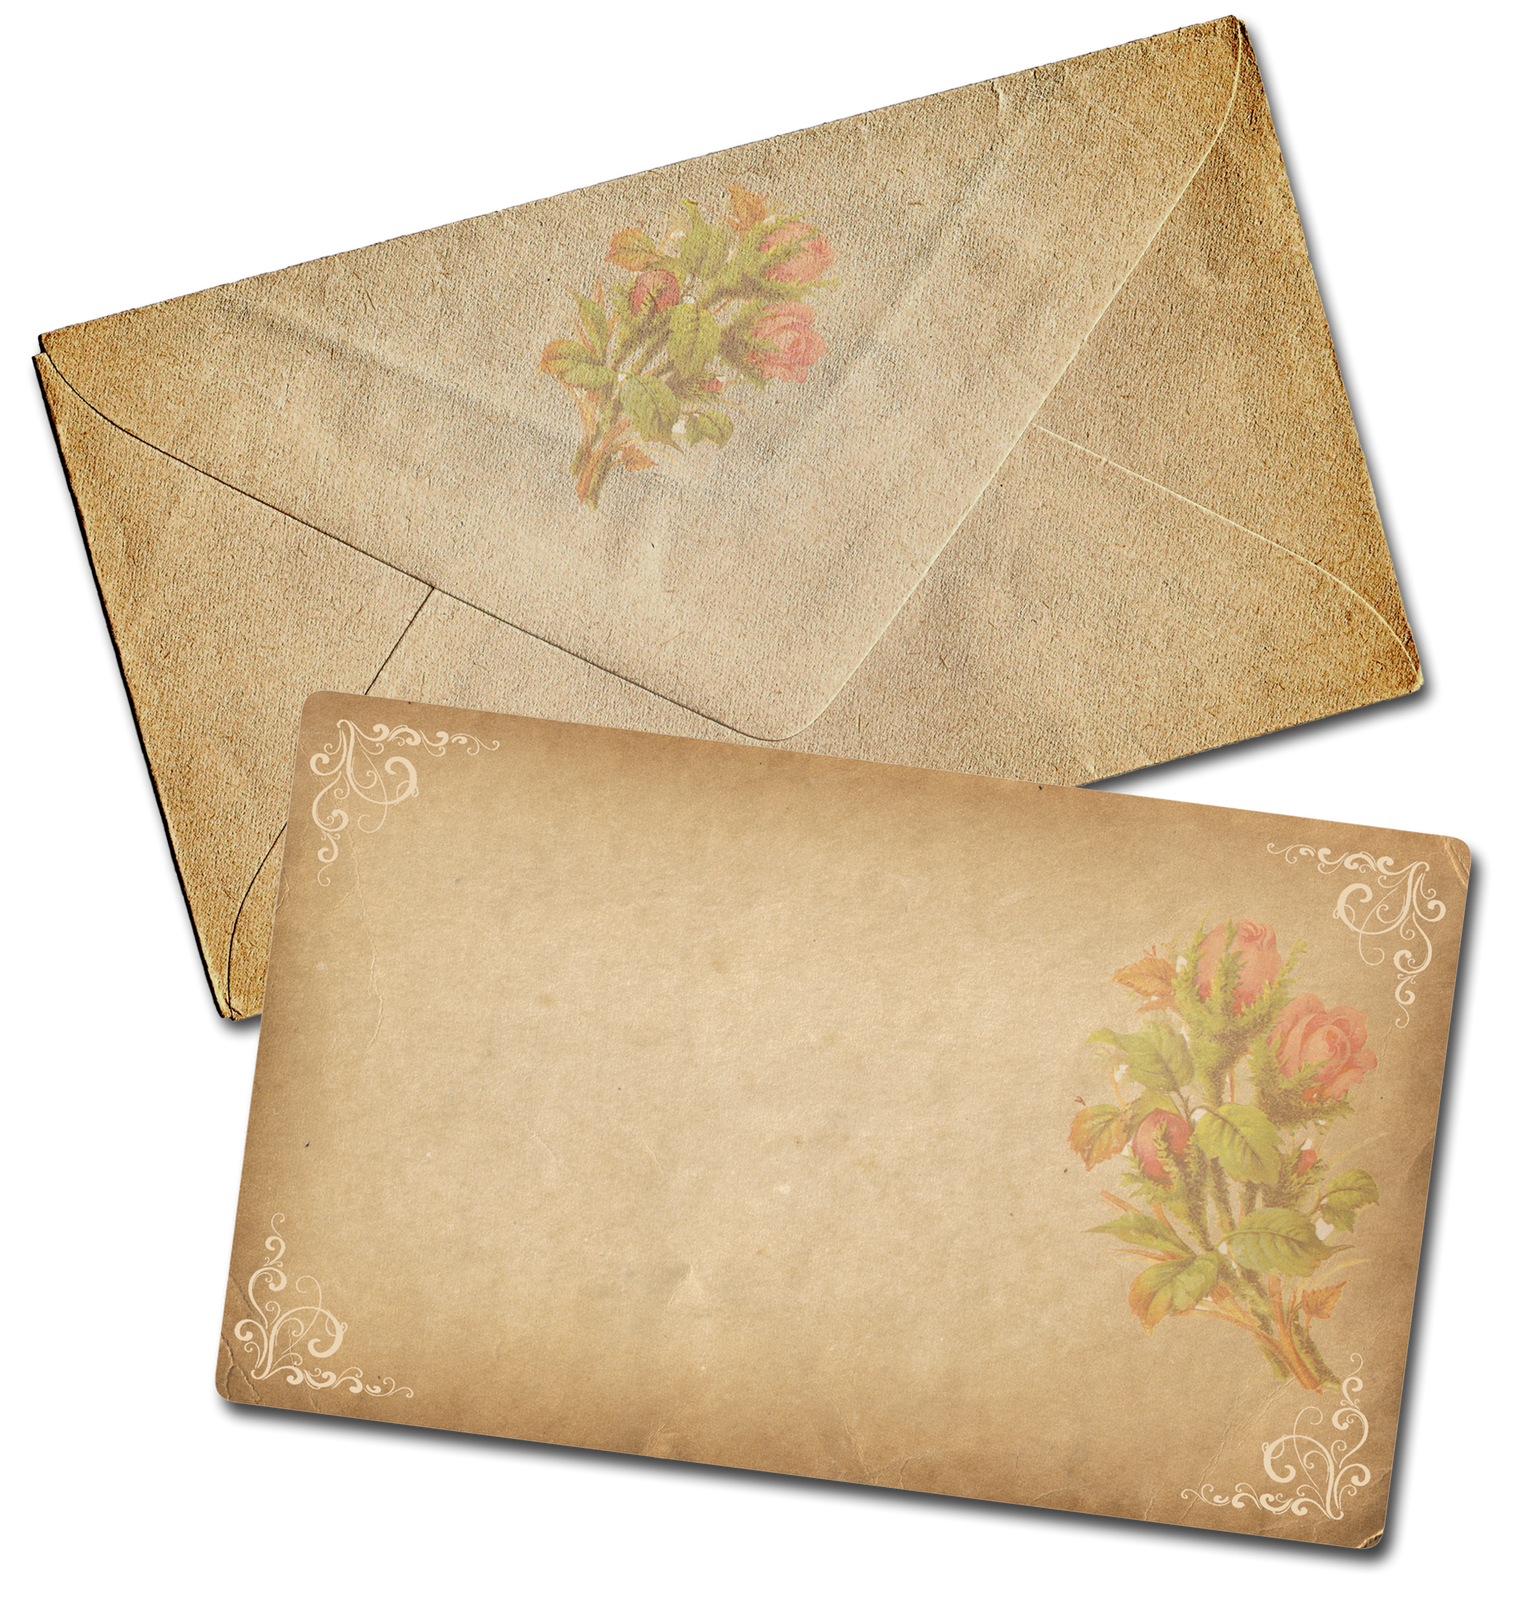 Envelope clipart old envelope, Envelope old envelope.